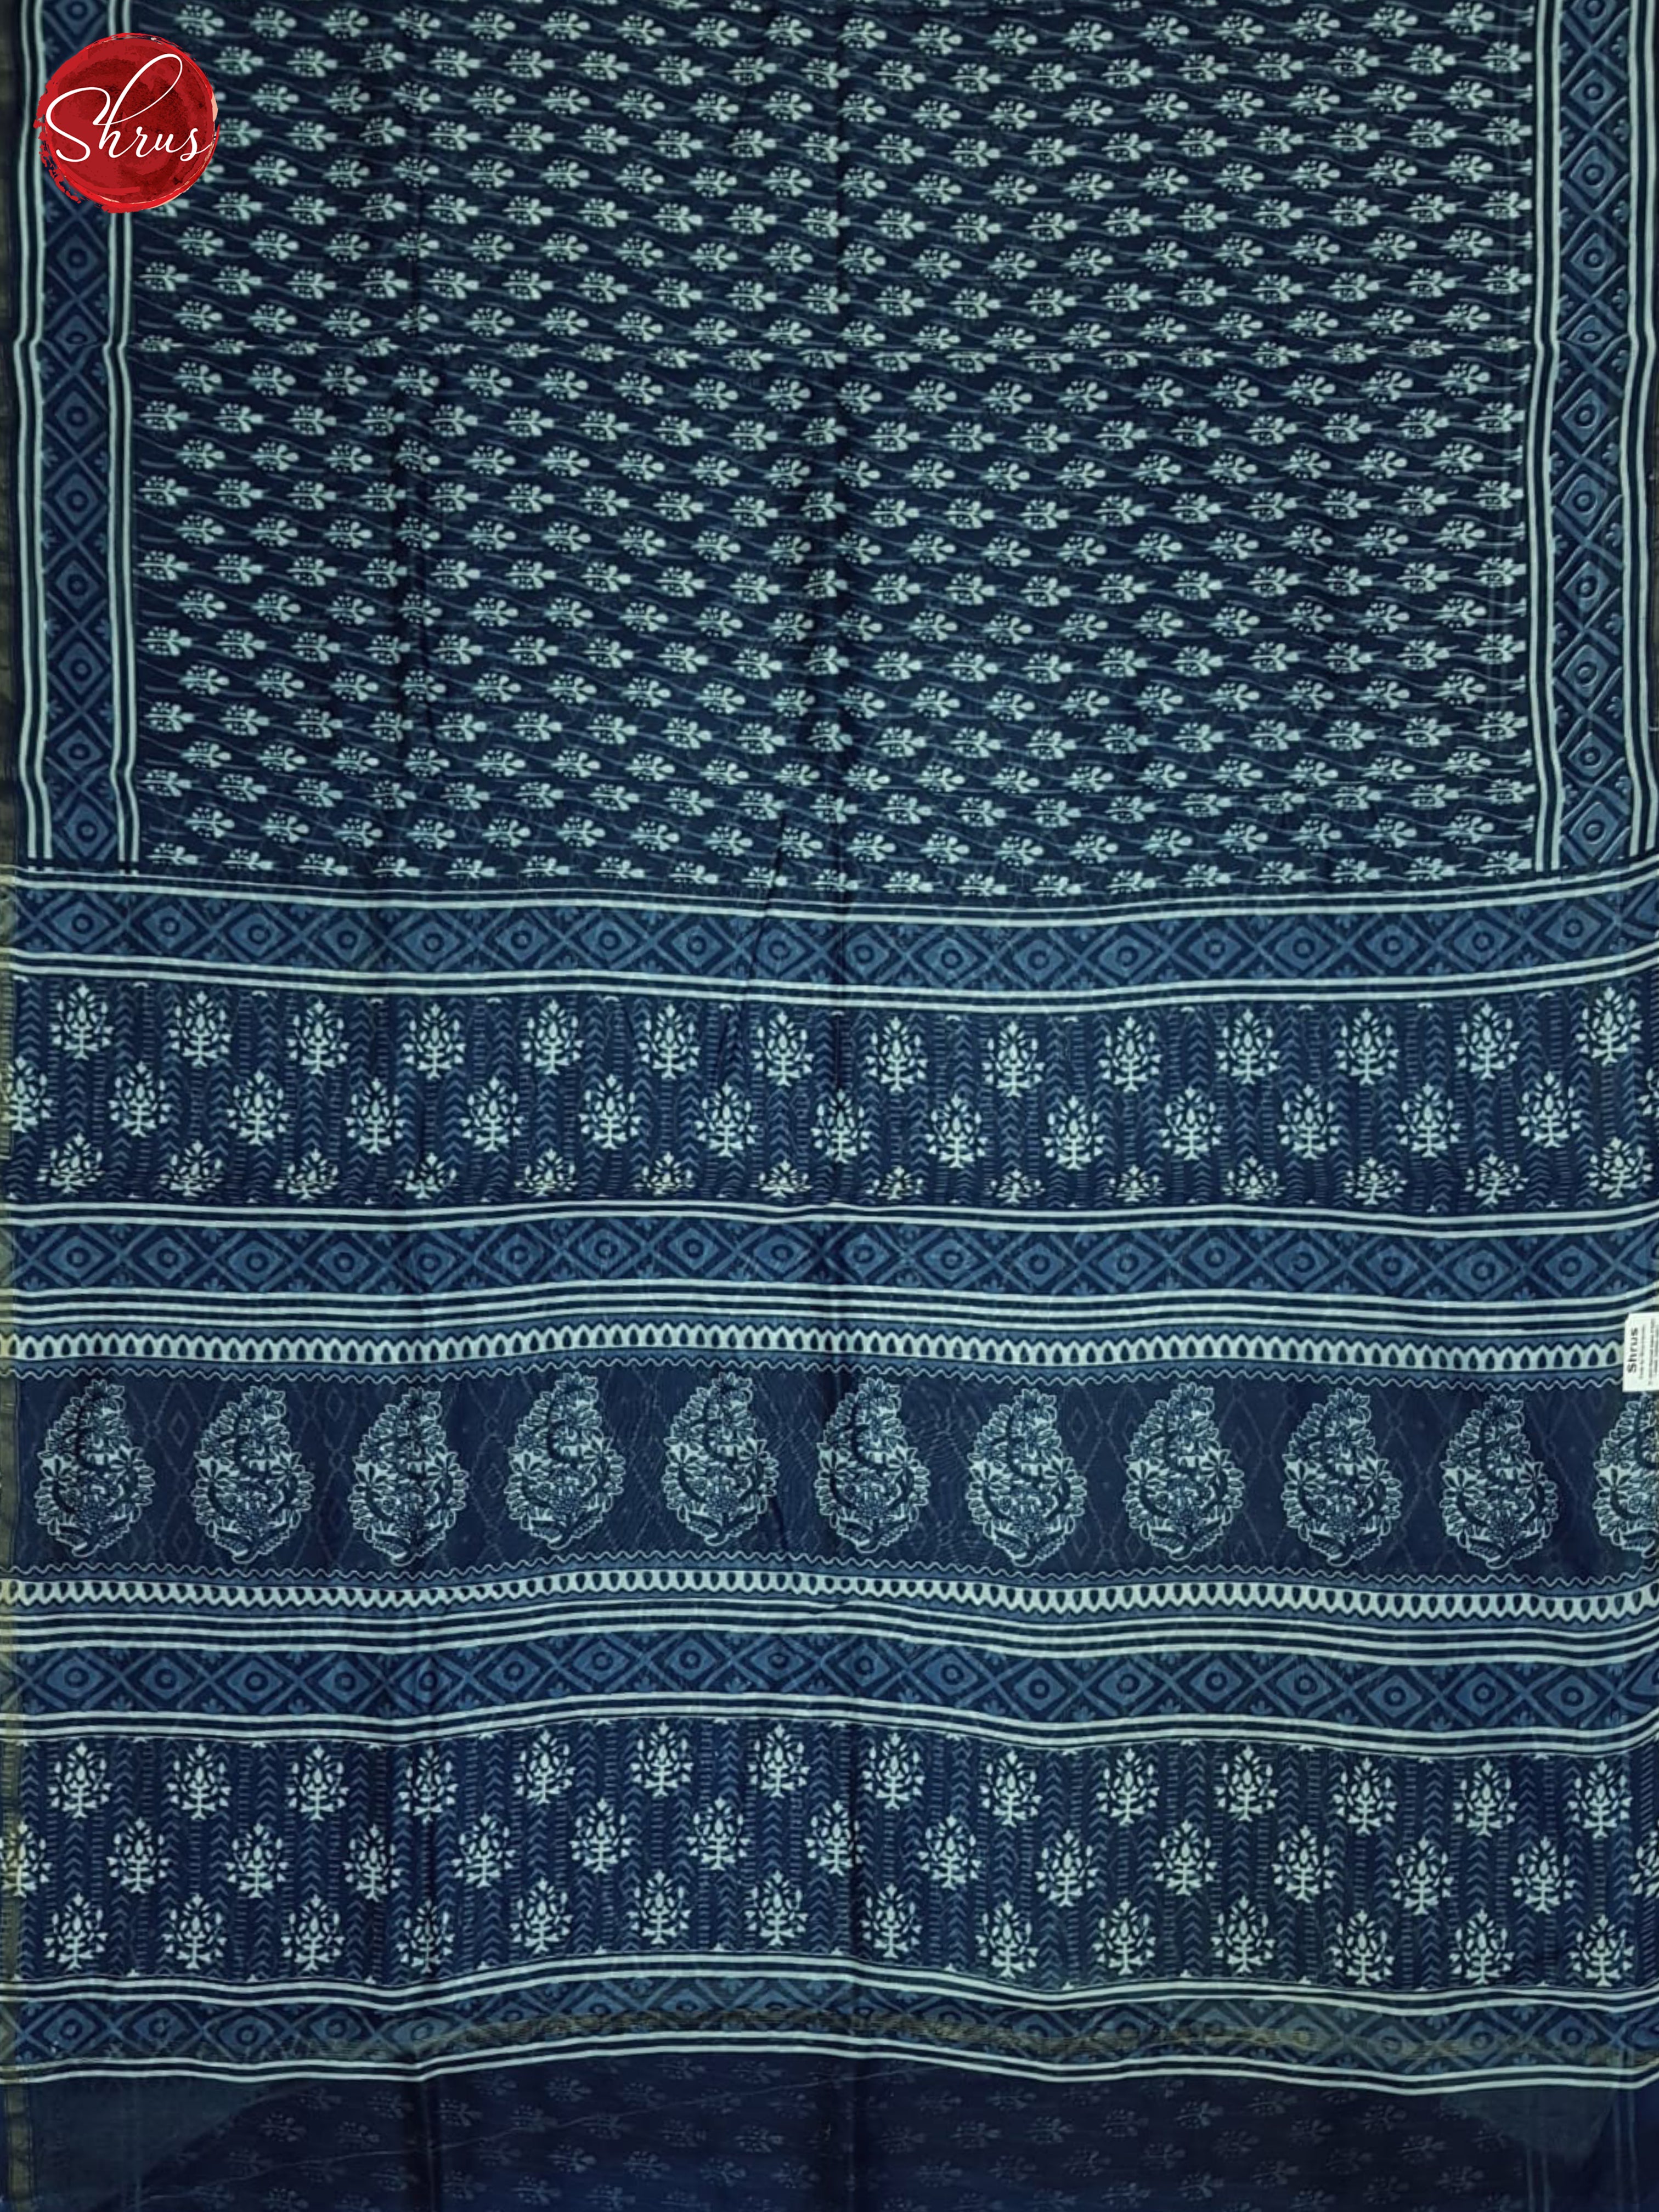 Blue(Single tone)- Maheshwari silk cotton Saree - Shop on ShrusEternity.com